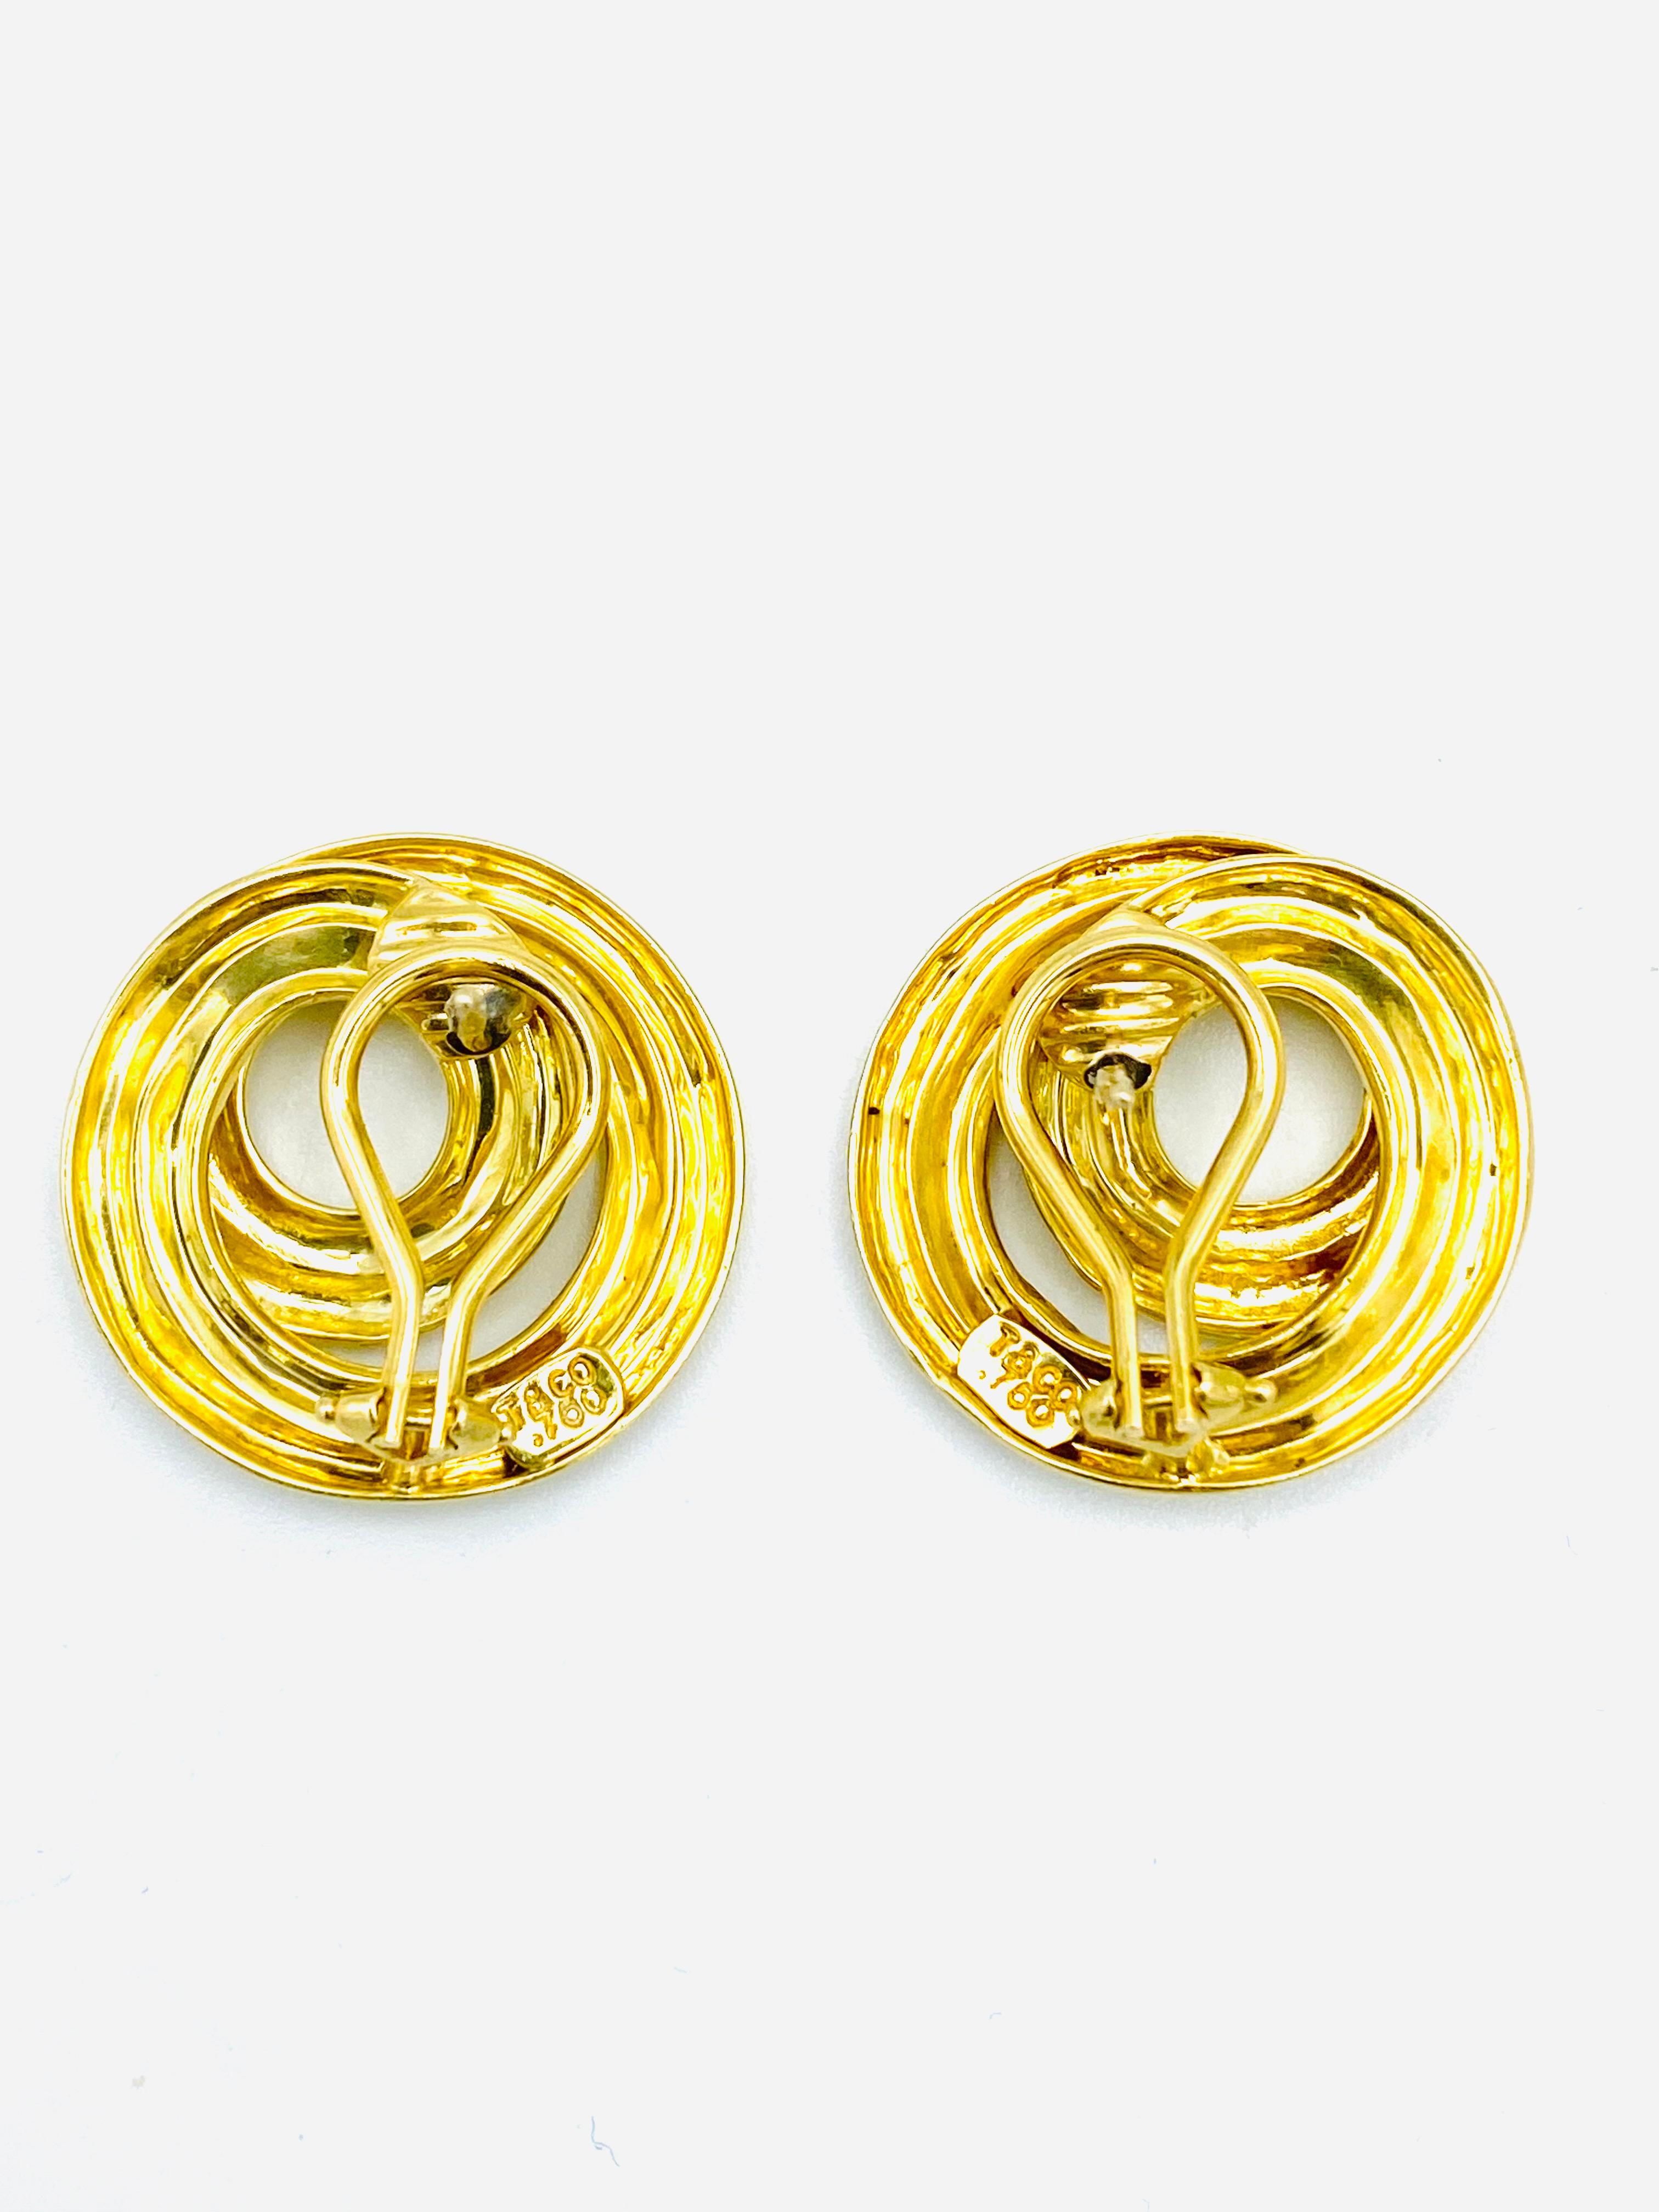 Vintage Tiffany & Co. 18K Yellow Gold Earrings 1